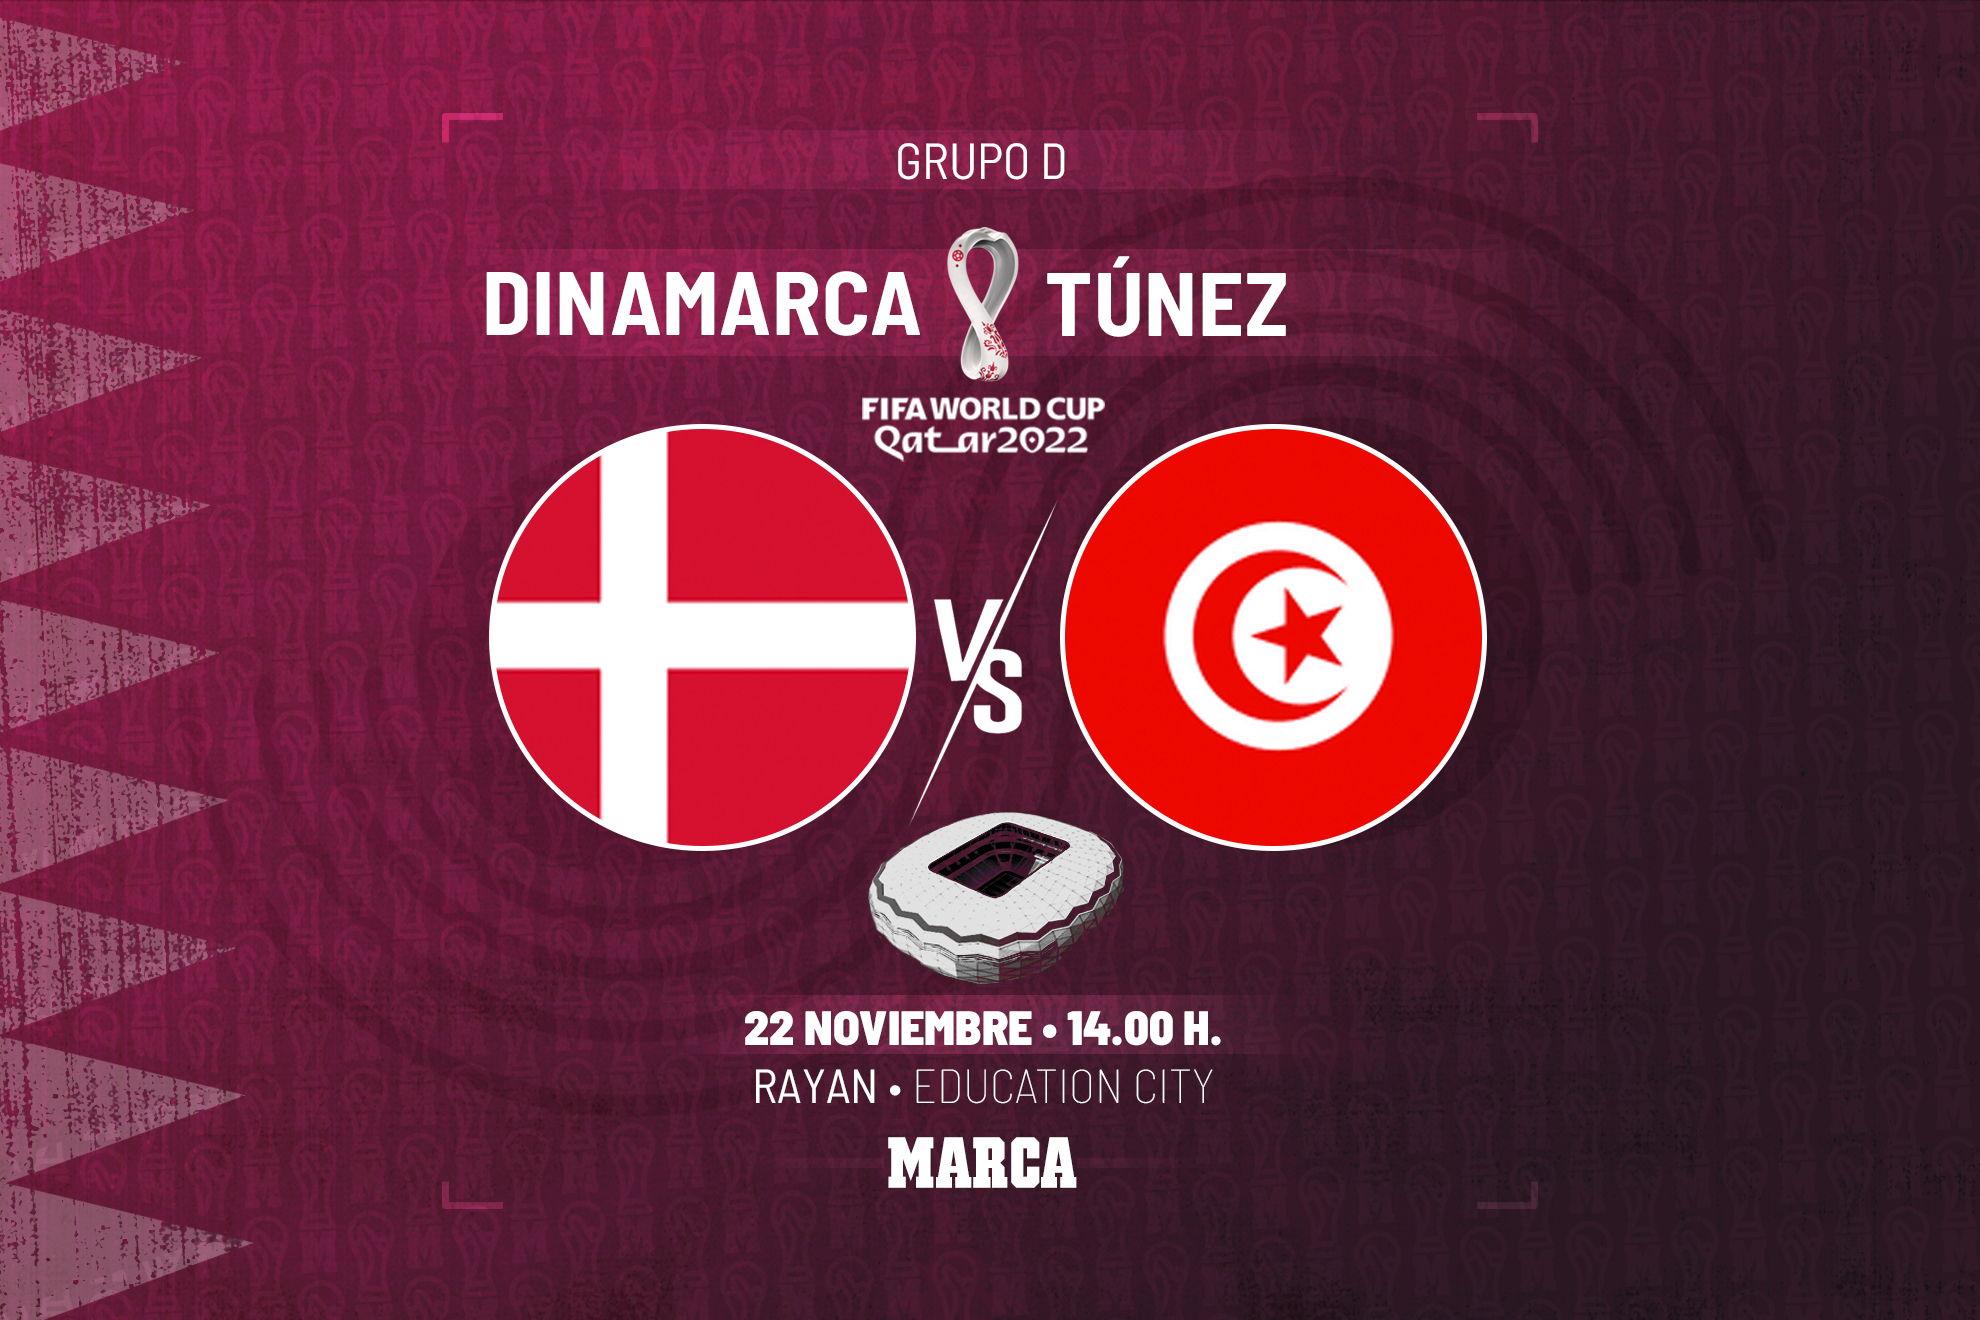 Dinamarca - Túnez | A soñar con el bloque de Eriksen: previa, análisis, pronóstico y predicción